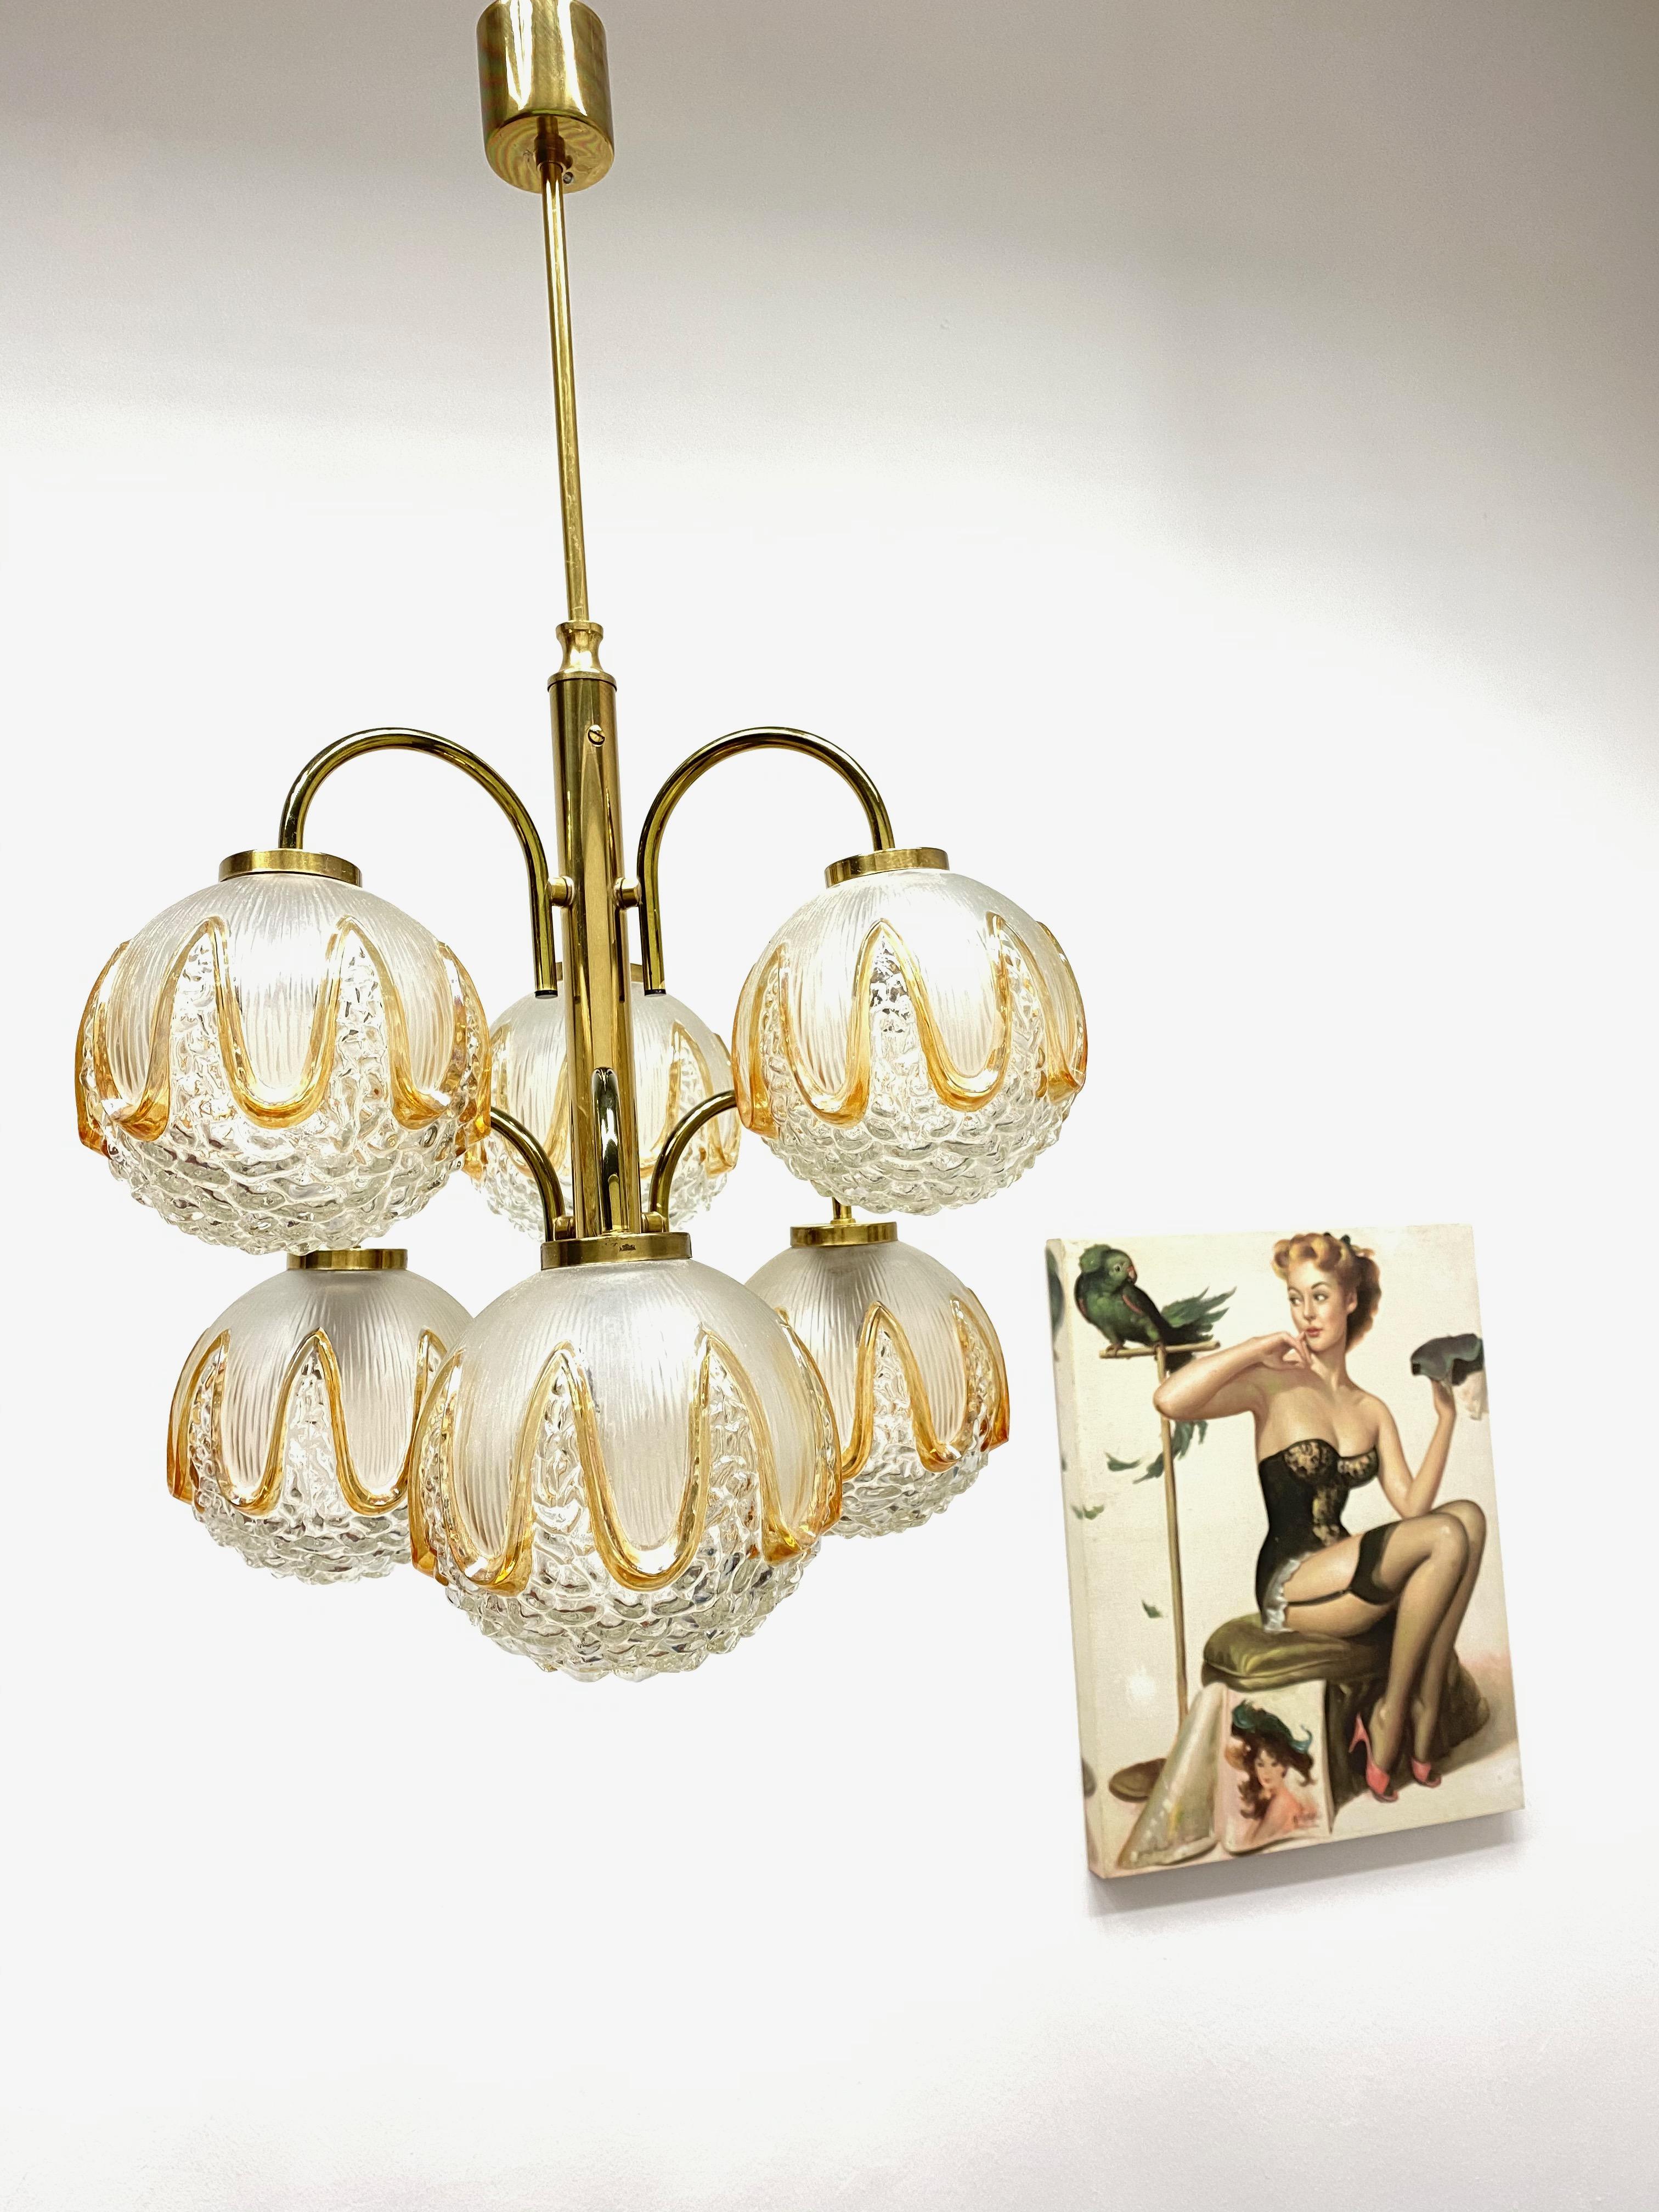 Un lustre Richard Essig fabriqué en Allemagne dans les années 1960. Il est fascinant par son design et ses six boules de verre biomorphiques. Le corps de la lampe est entièrement en métal, y compris les bras.
Le lustre nécessite 6 ampoules